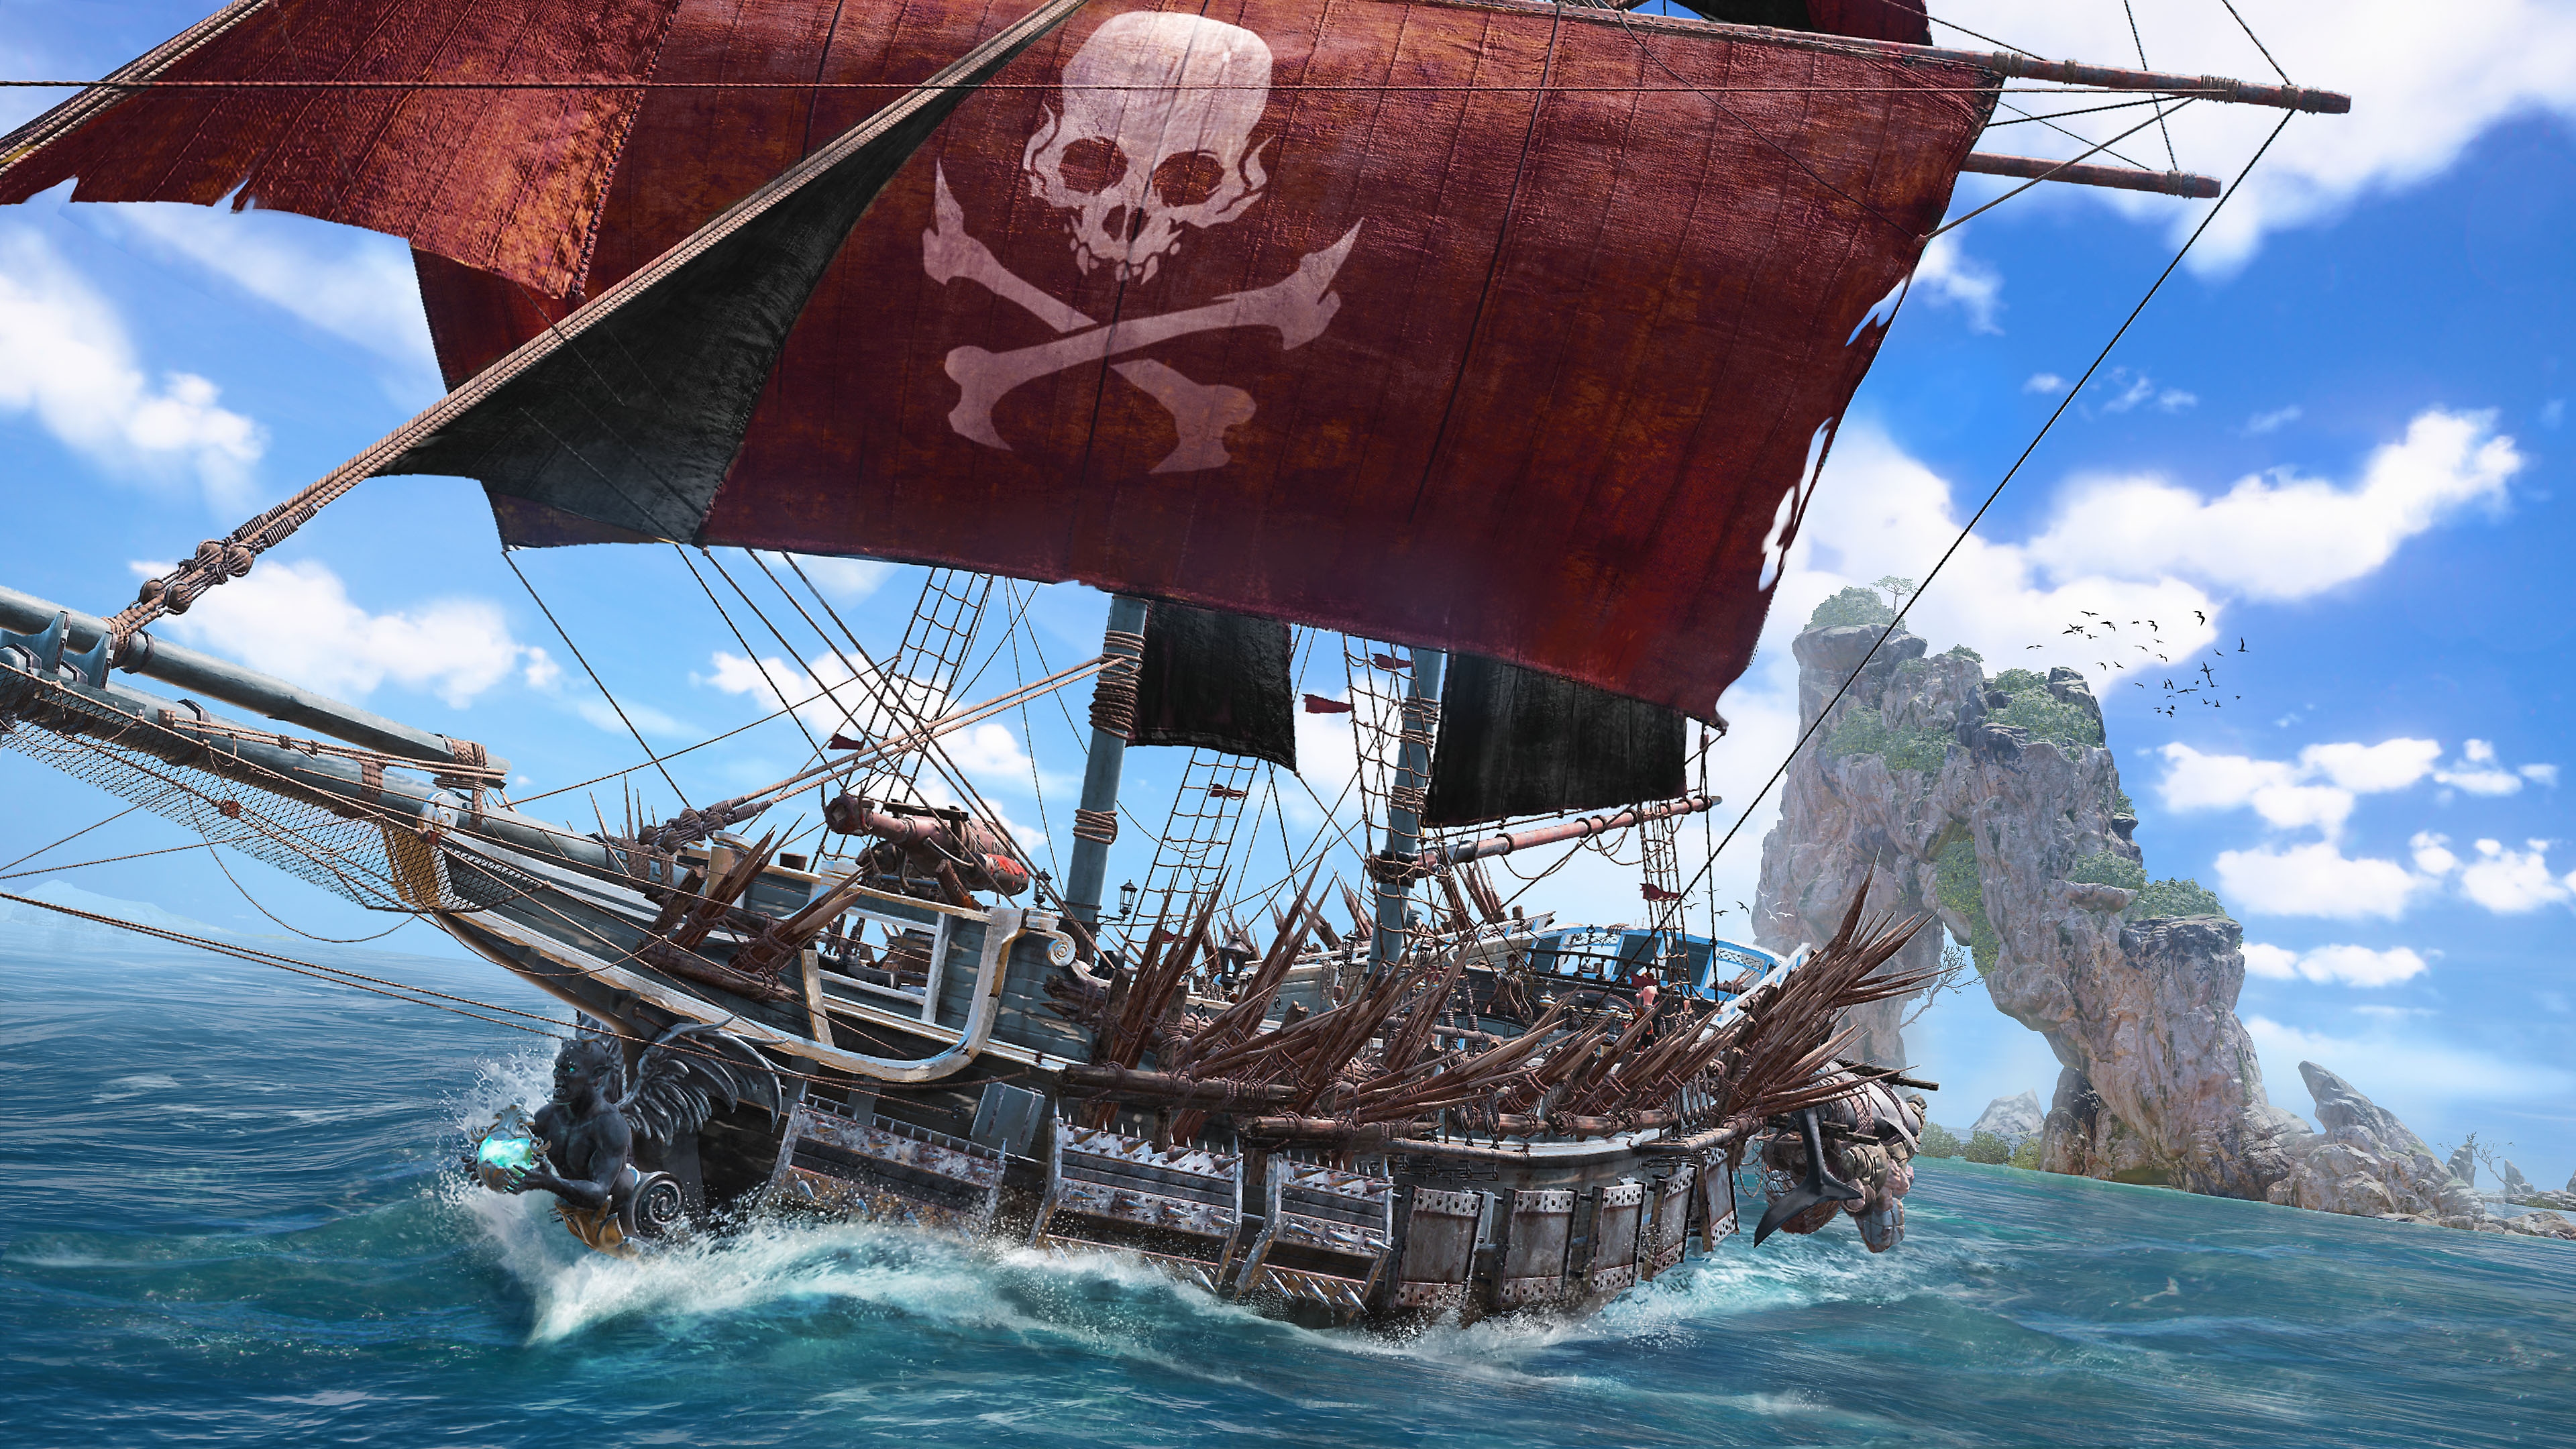 Skull and Bones – zrzut ekranu przedstawiający piracki statek z czaszką i skrzyżowanymi piszczelami, wymalowanymi na czerwonym żaglu głównego masztu